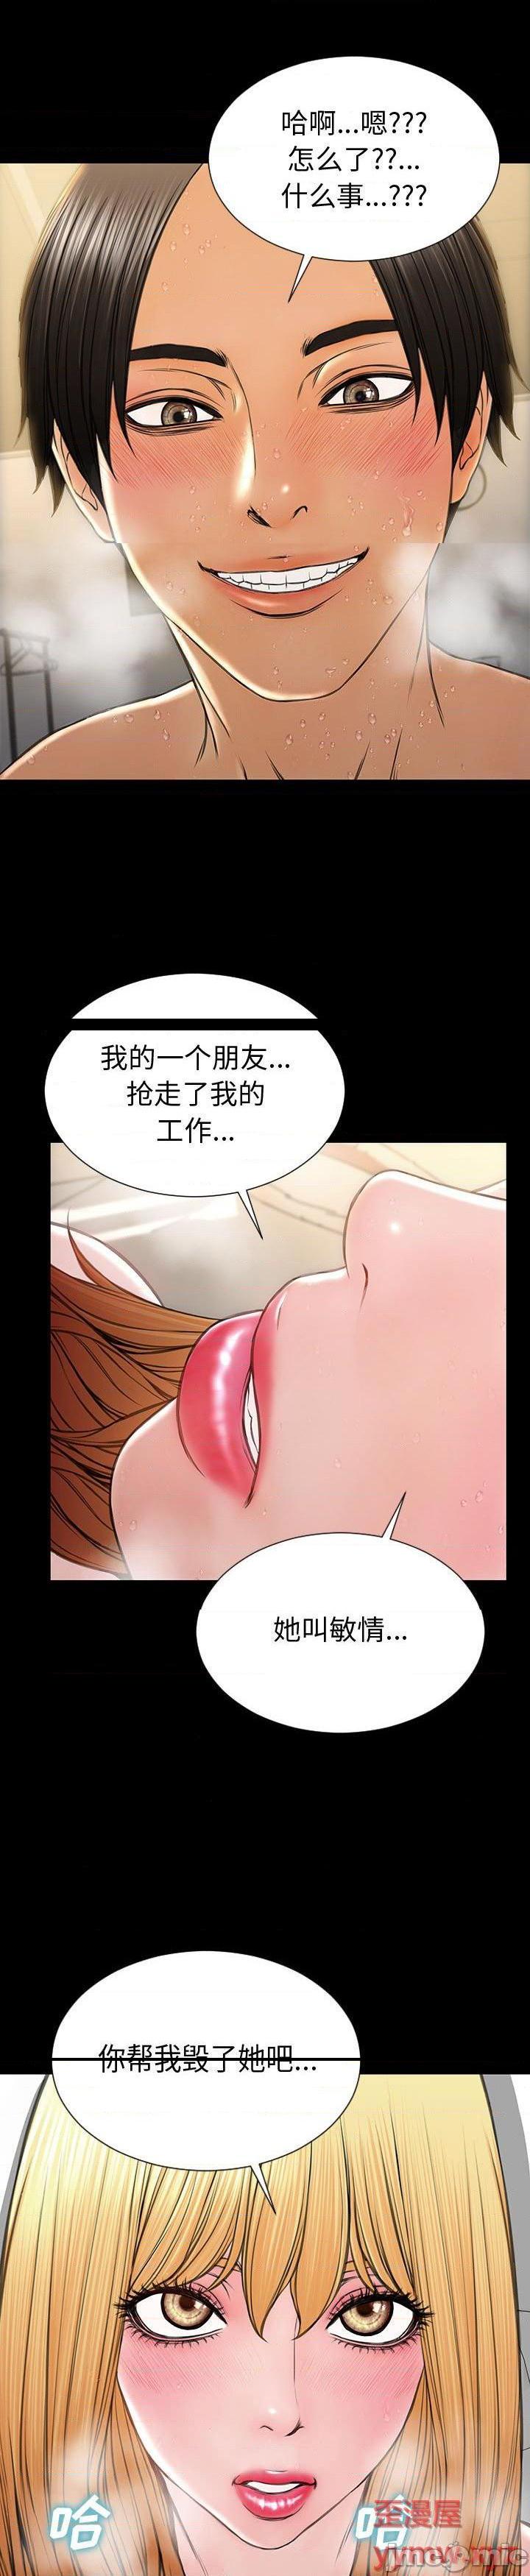 《网红出头天(网红吴妍智)》漫画 第46话